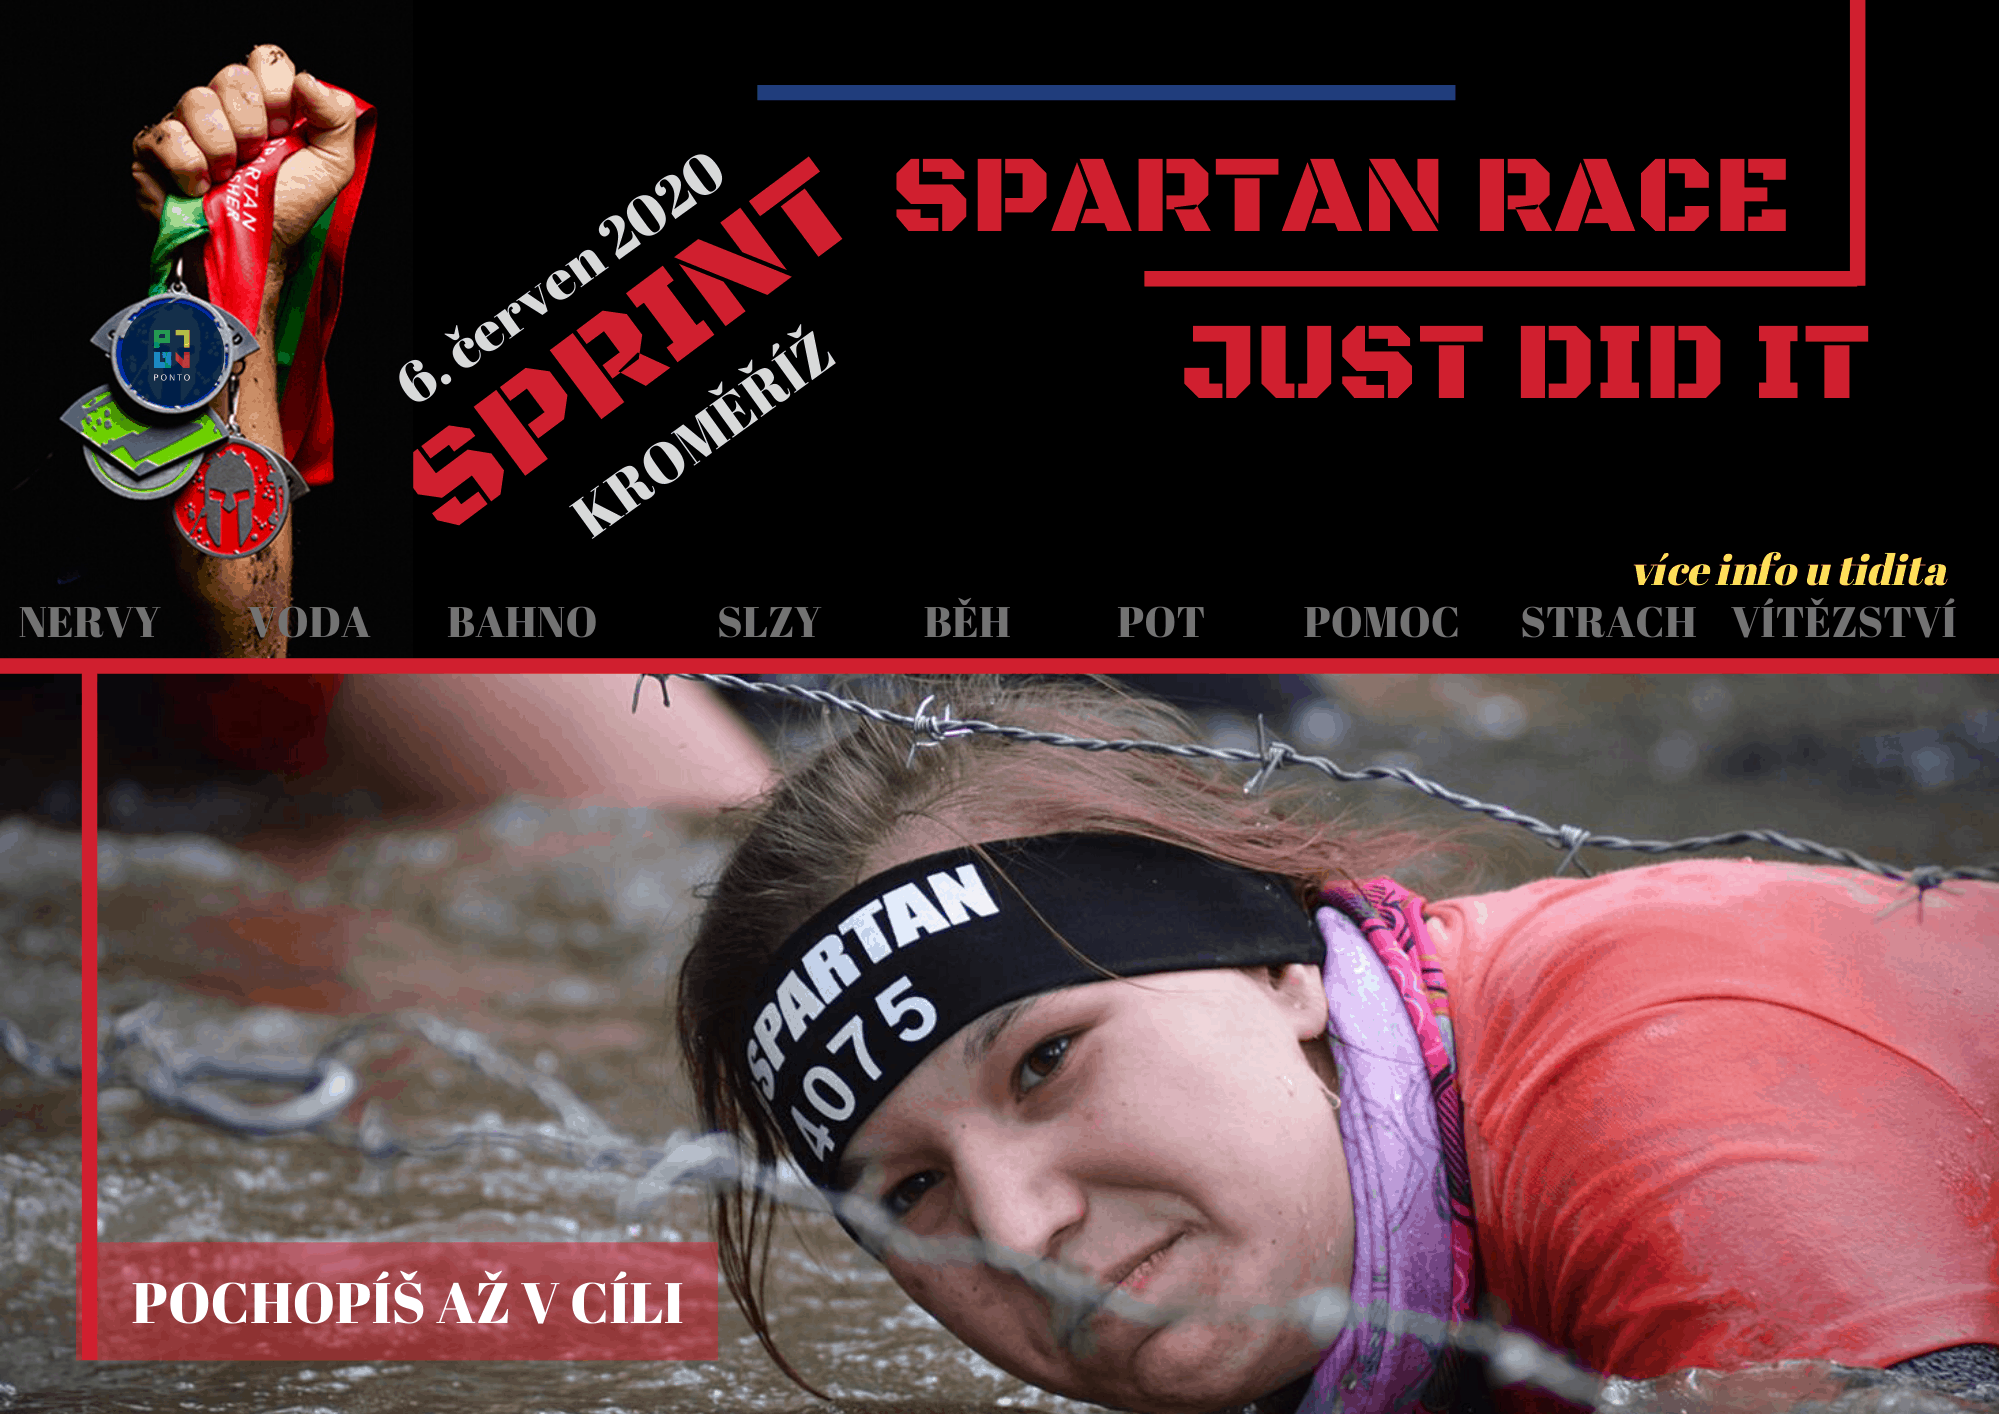 Spartan Race – Sprint